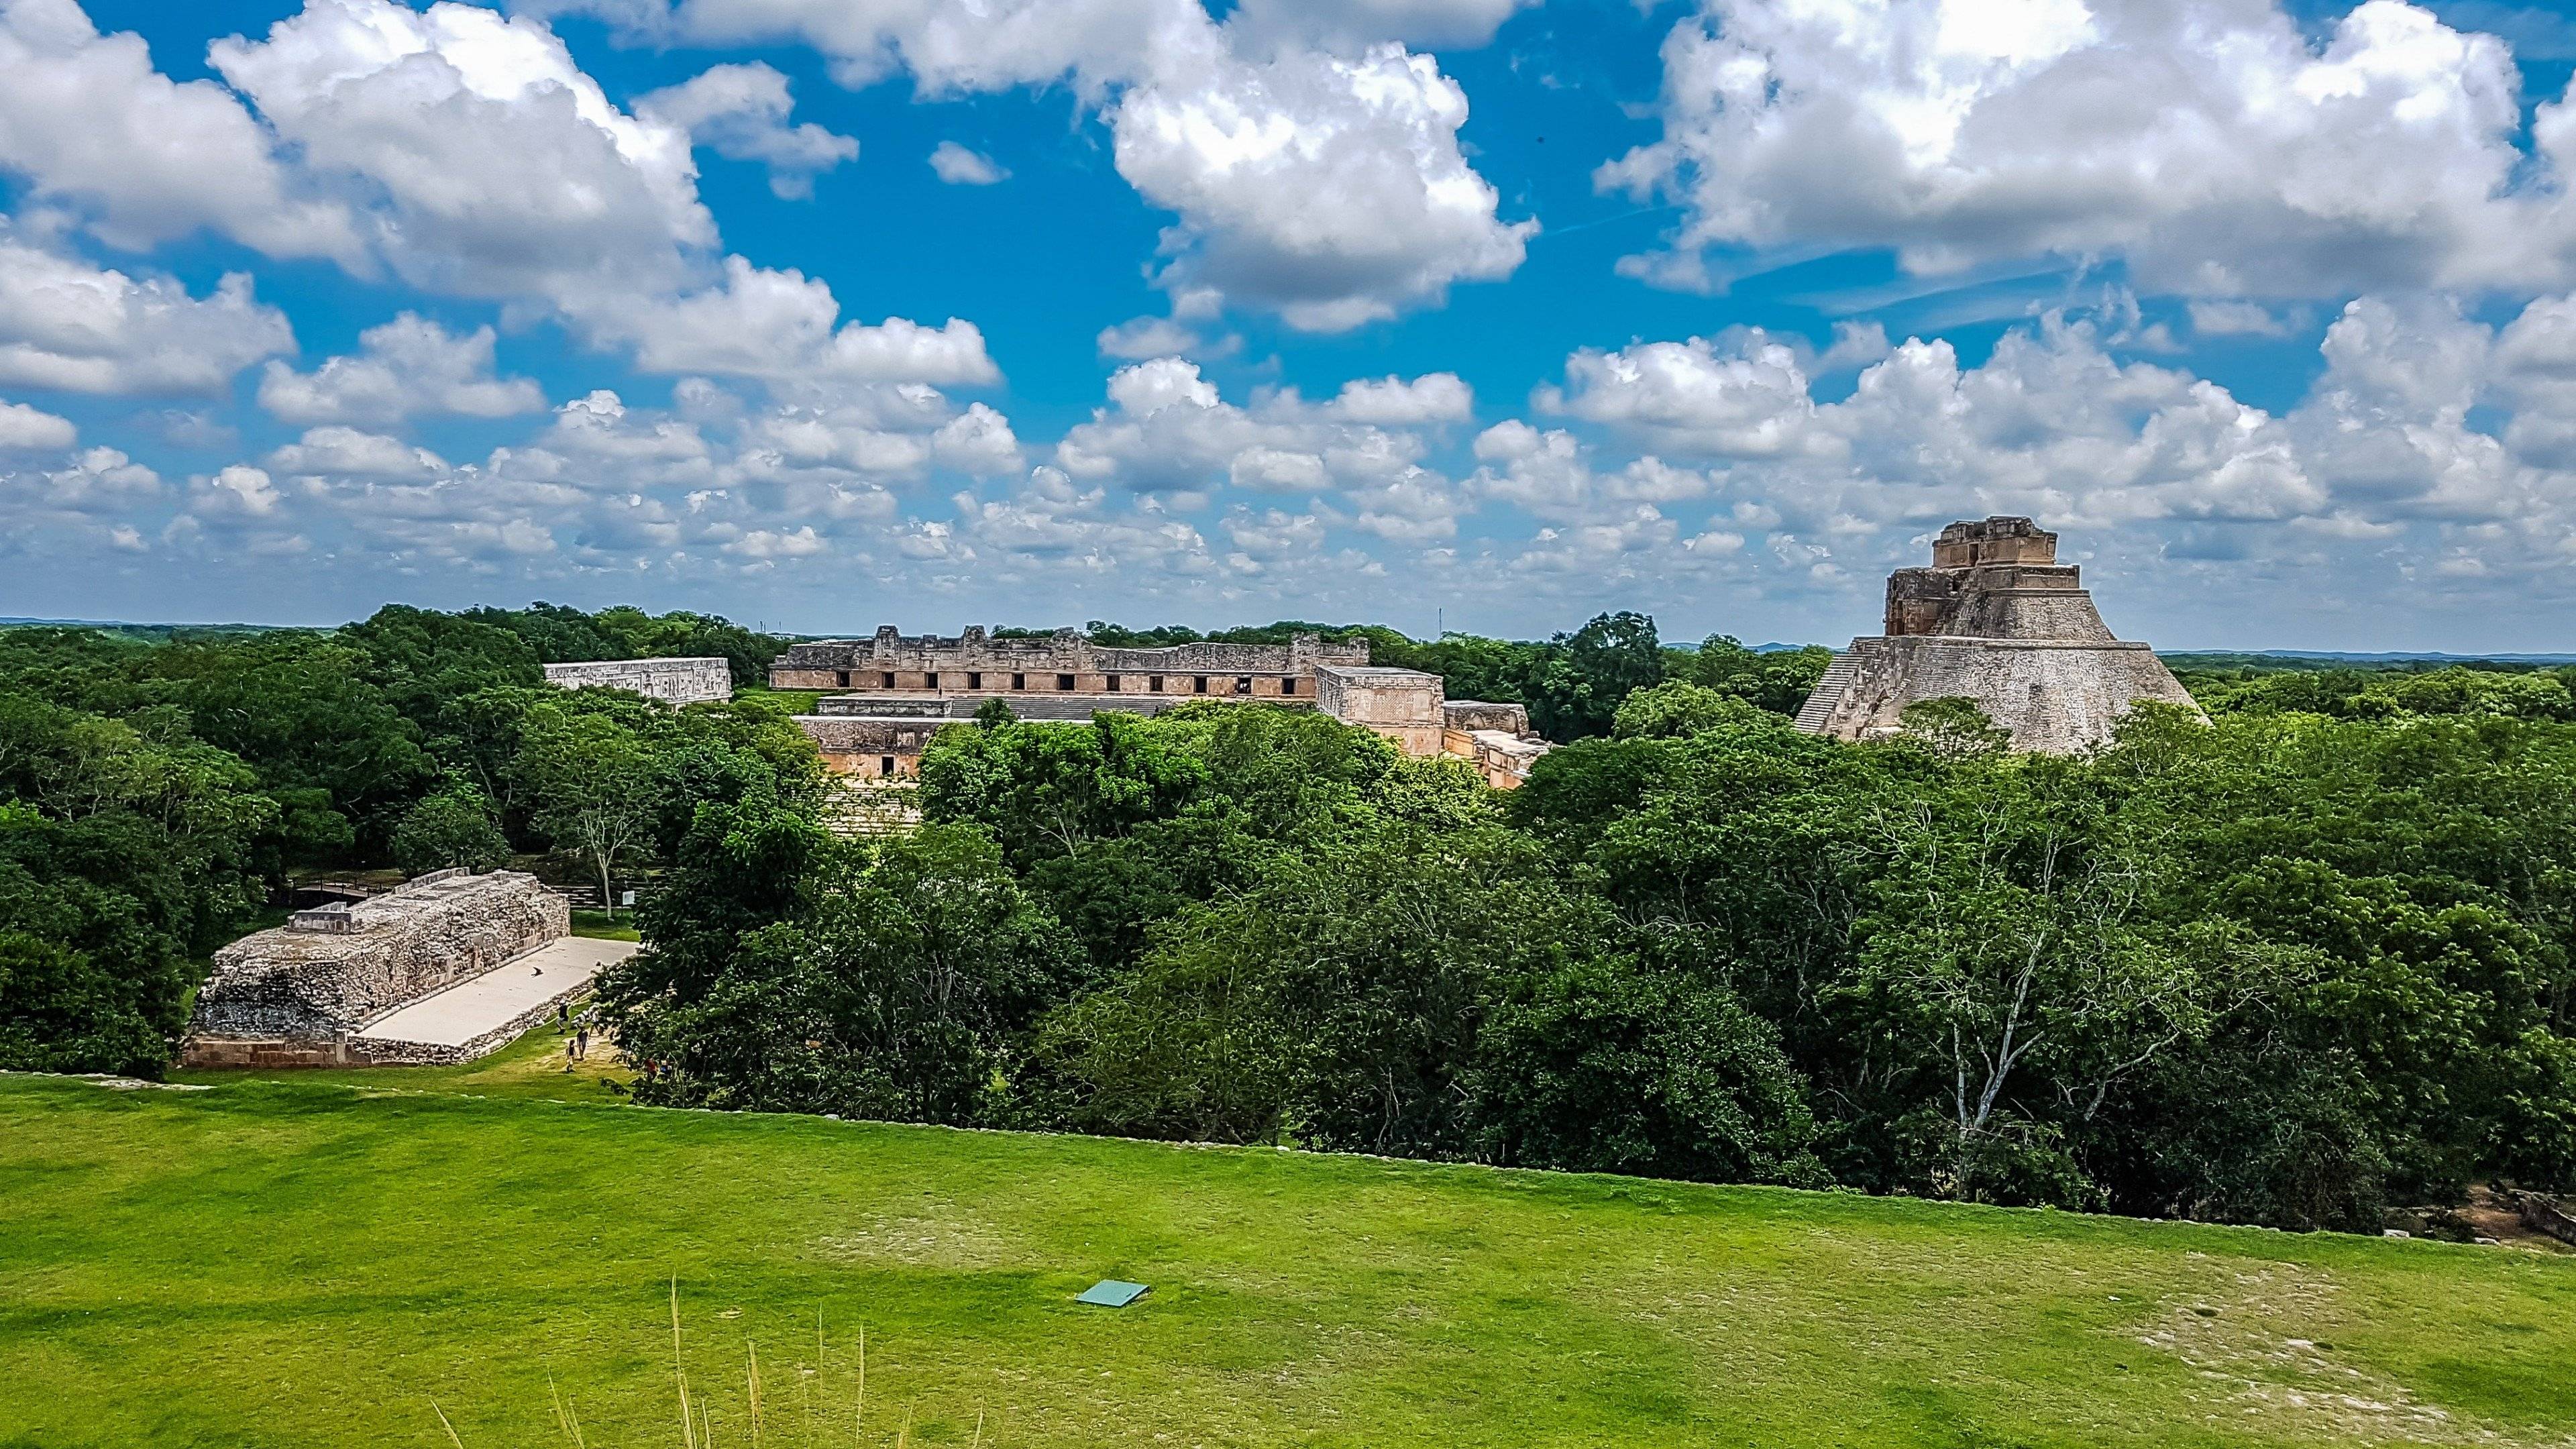 Visite du site de Uxmal, rivale de Chichén Itzá, et de la ville de Campeche